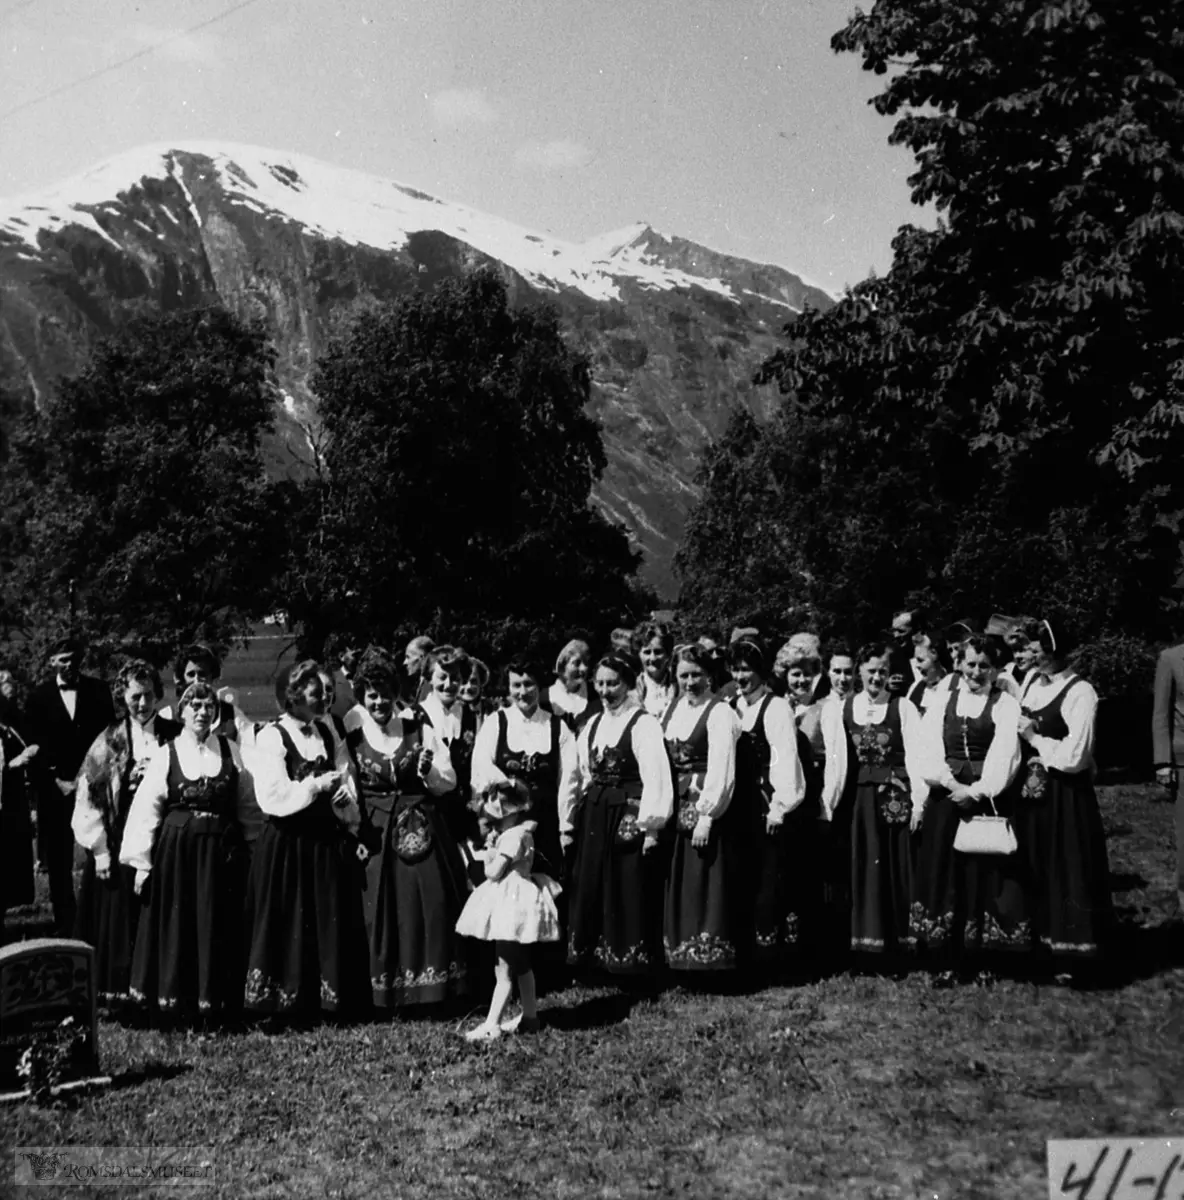 Bra bryllupet til Marit og Halvor Reitan 30.06.1962..Bildet er tatt ved Eikesdal kyrkje, men brudeparet (som ikkje er med på bildet) budde på gnr. 79/1.